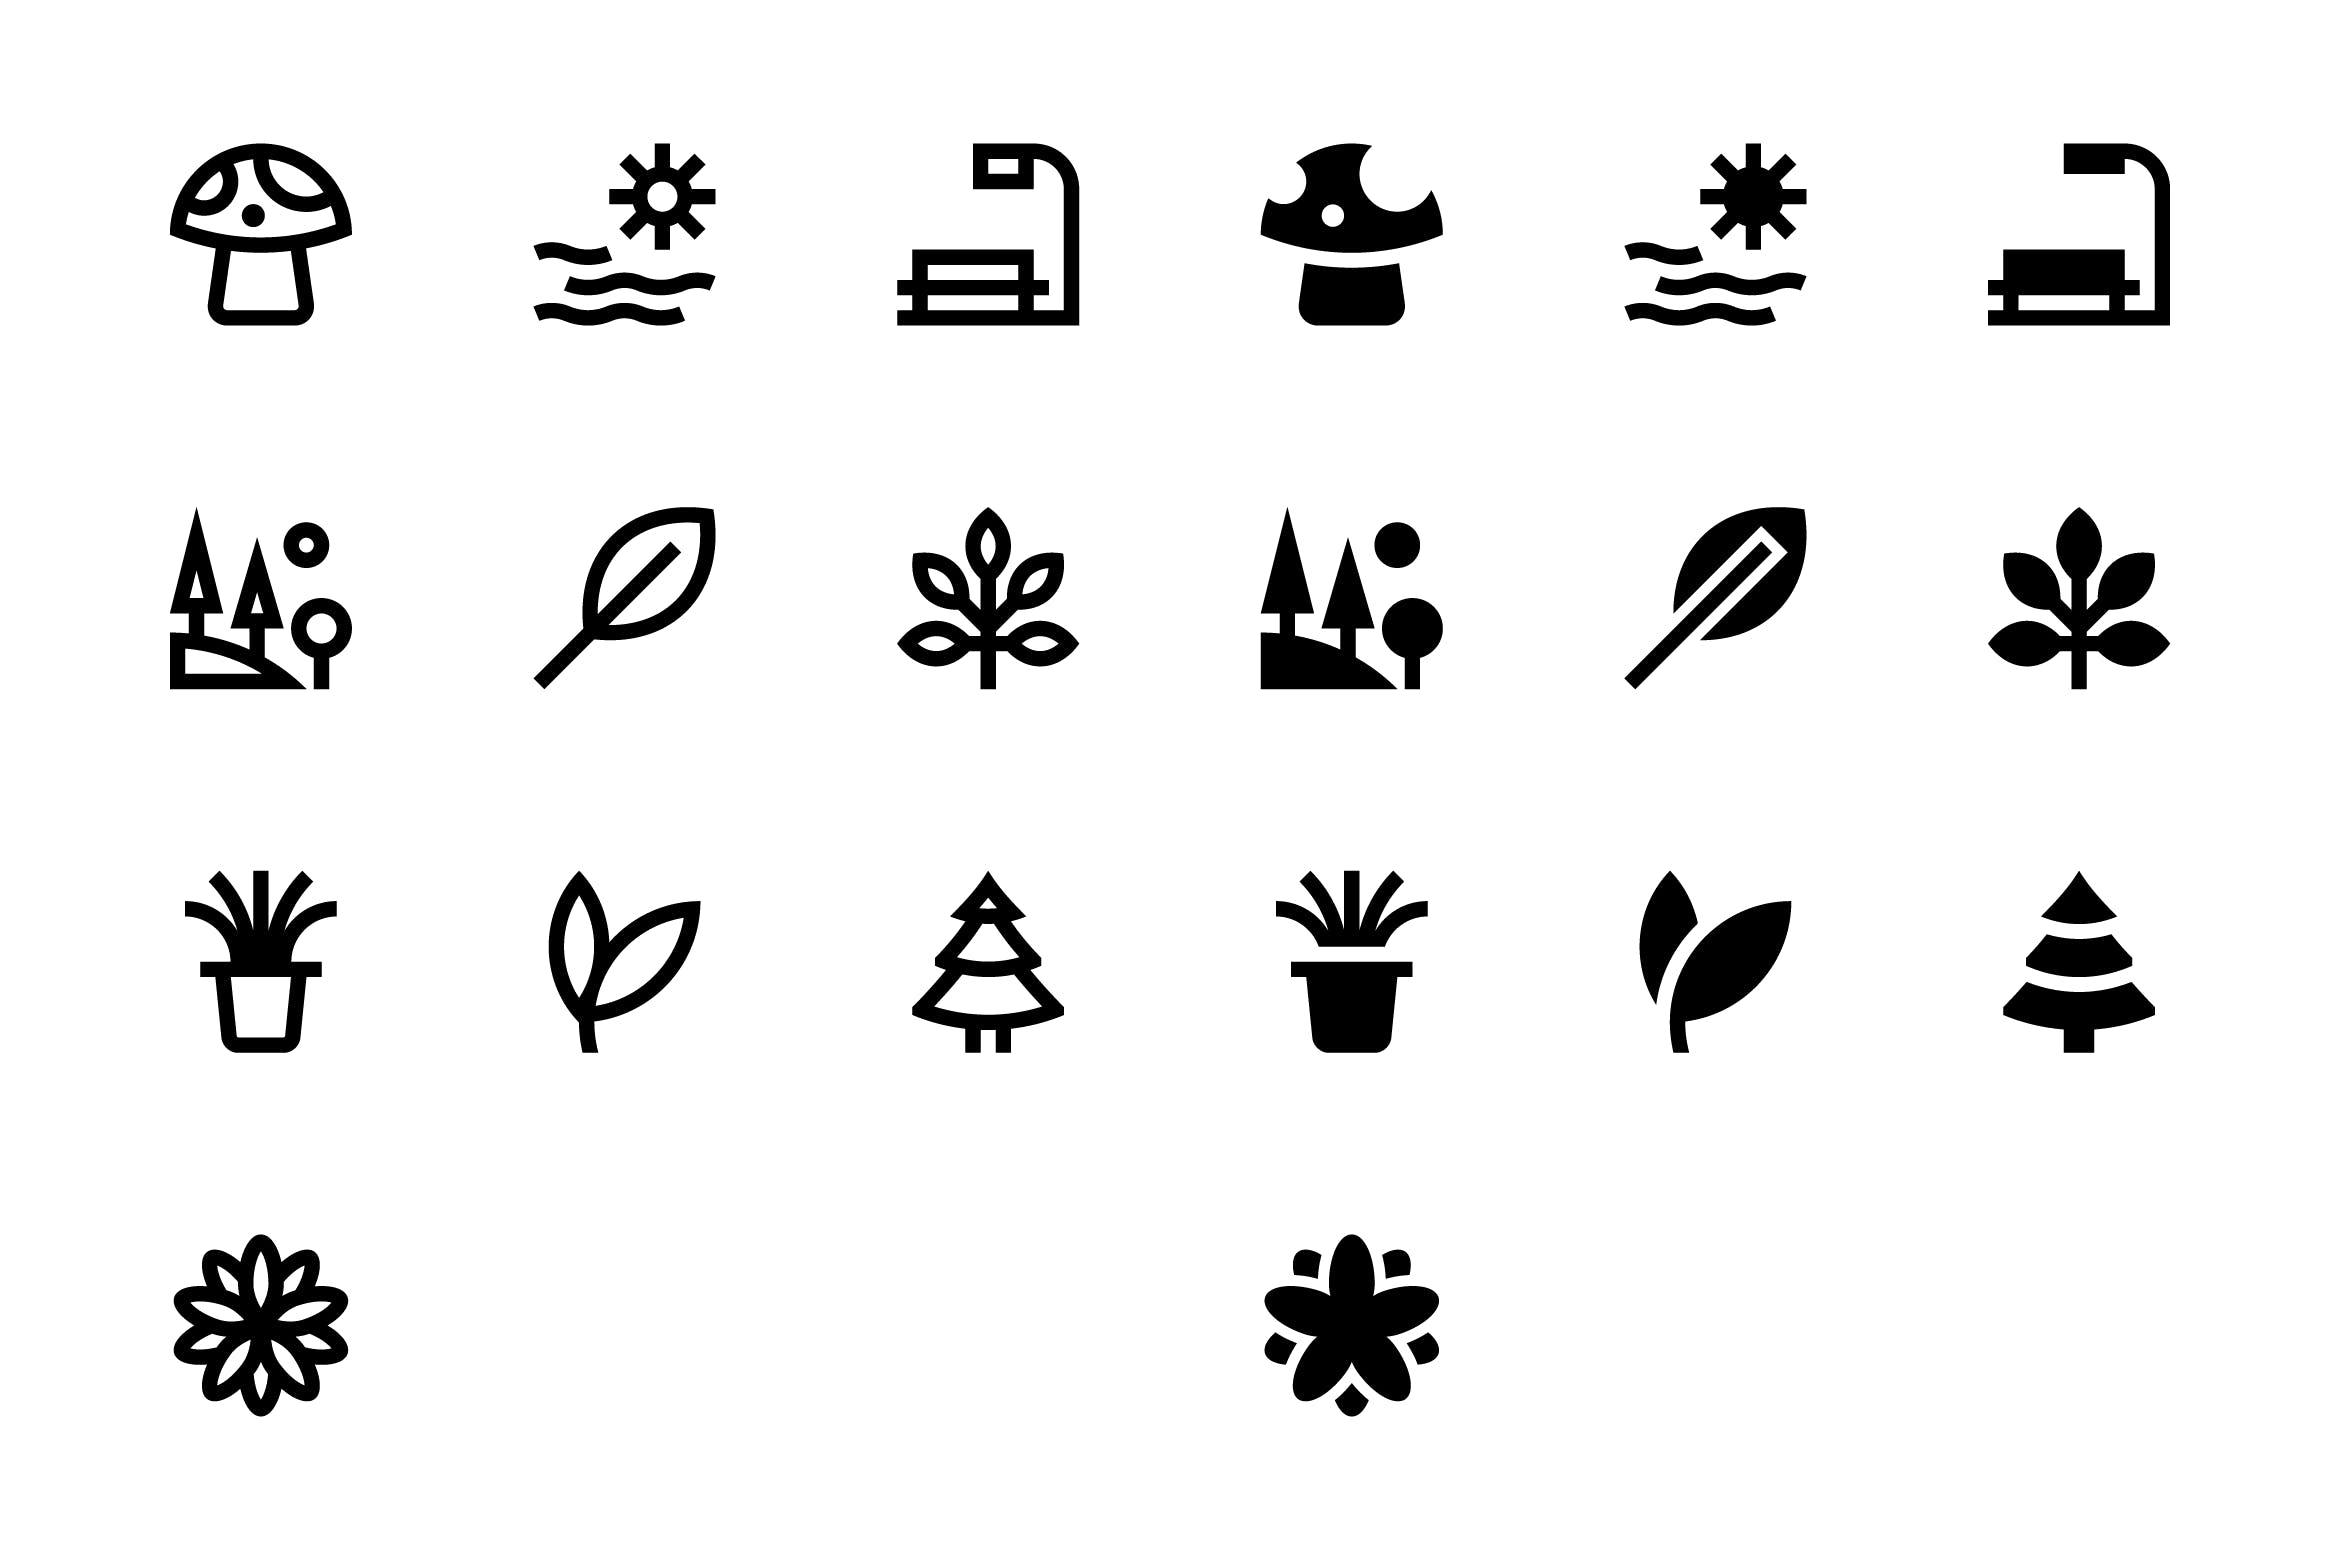 20枚自然主题SVG矢量素材库精选图标#3 20 Nature Icons #3插图